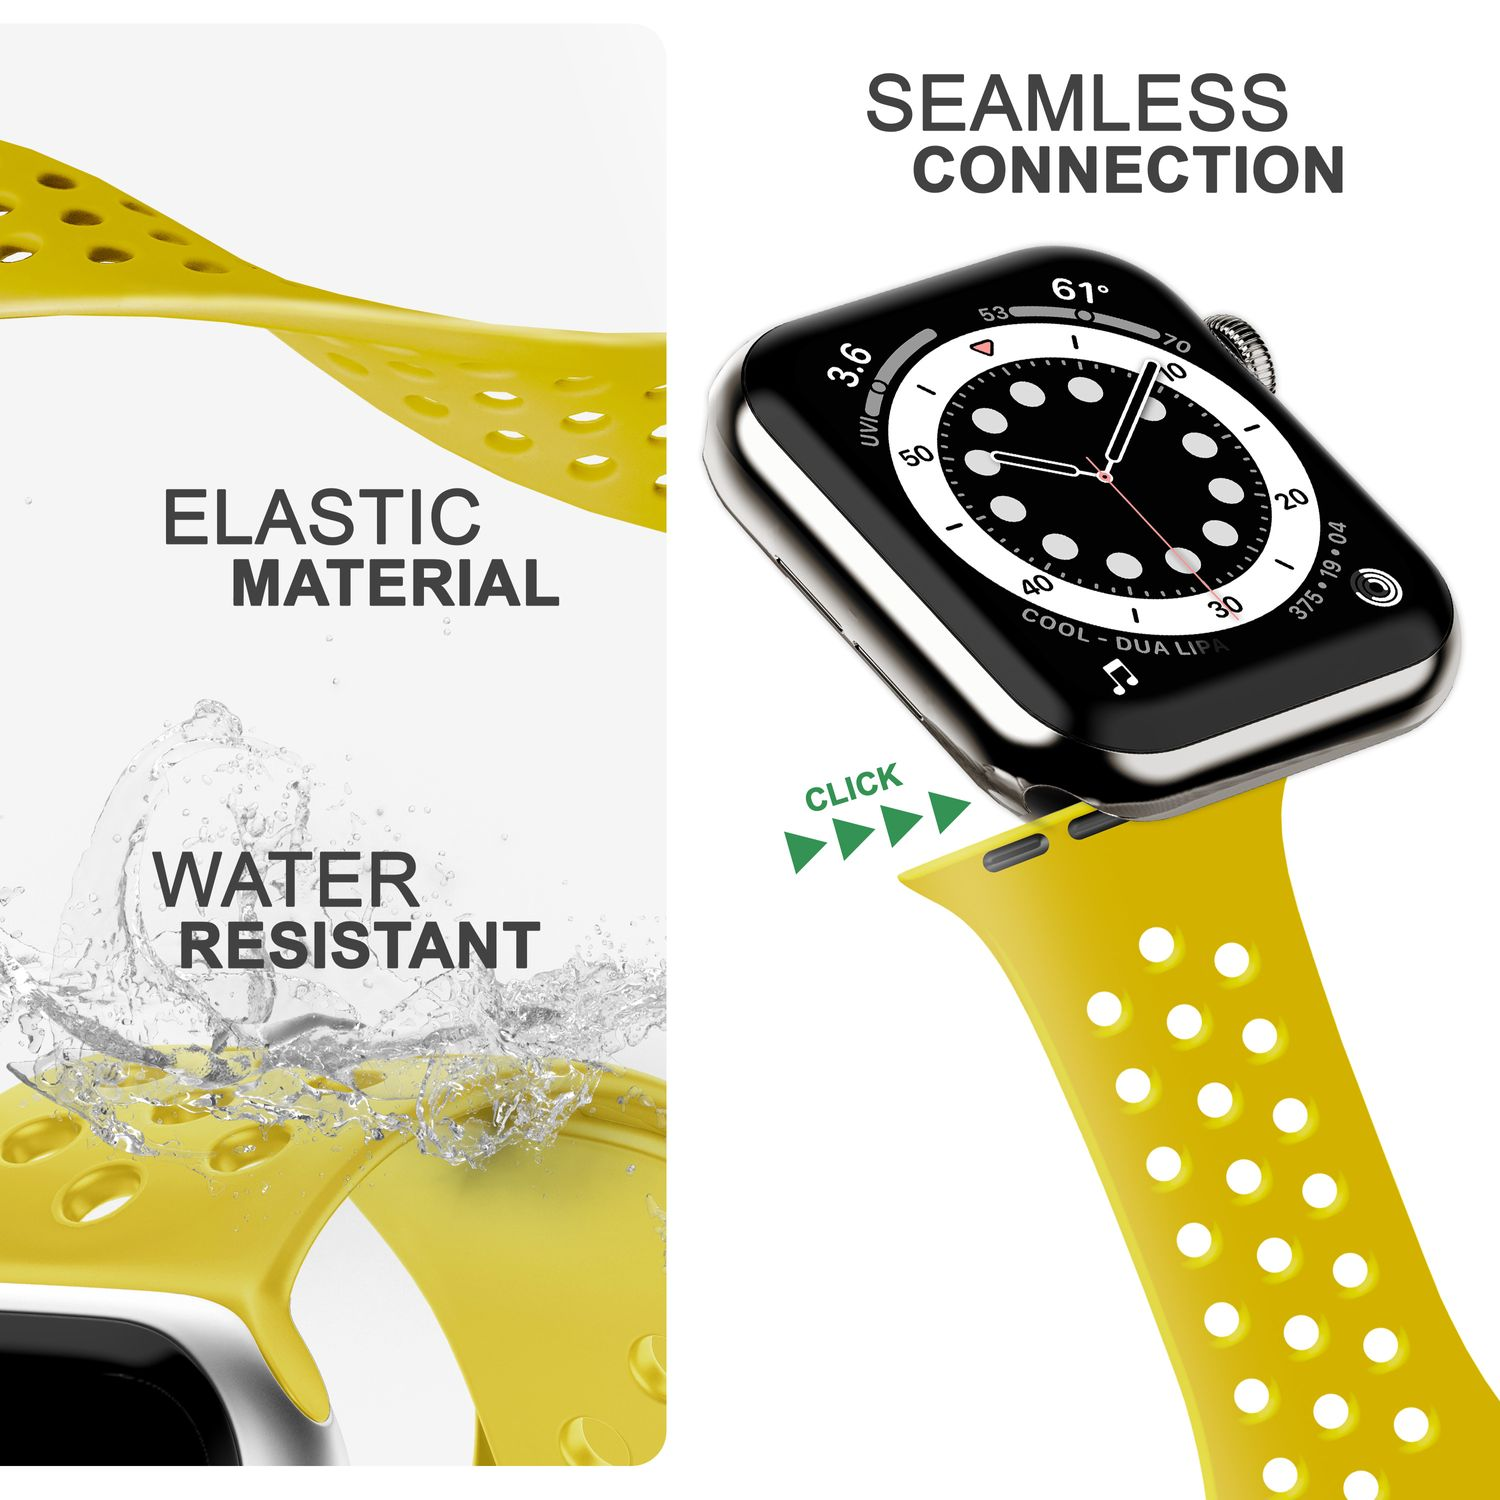 Watch Apple, Ersatzarmband, Loch-Optik, Gelb Smartwatch NALIA 42mm/44mm/45mm/49mm, Armband Apple